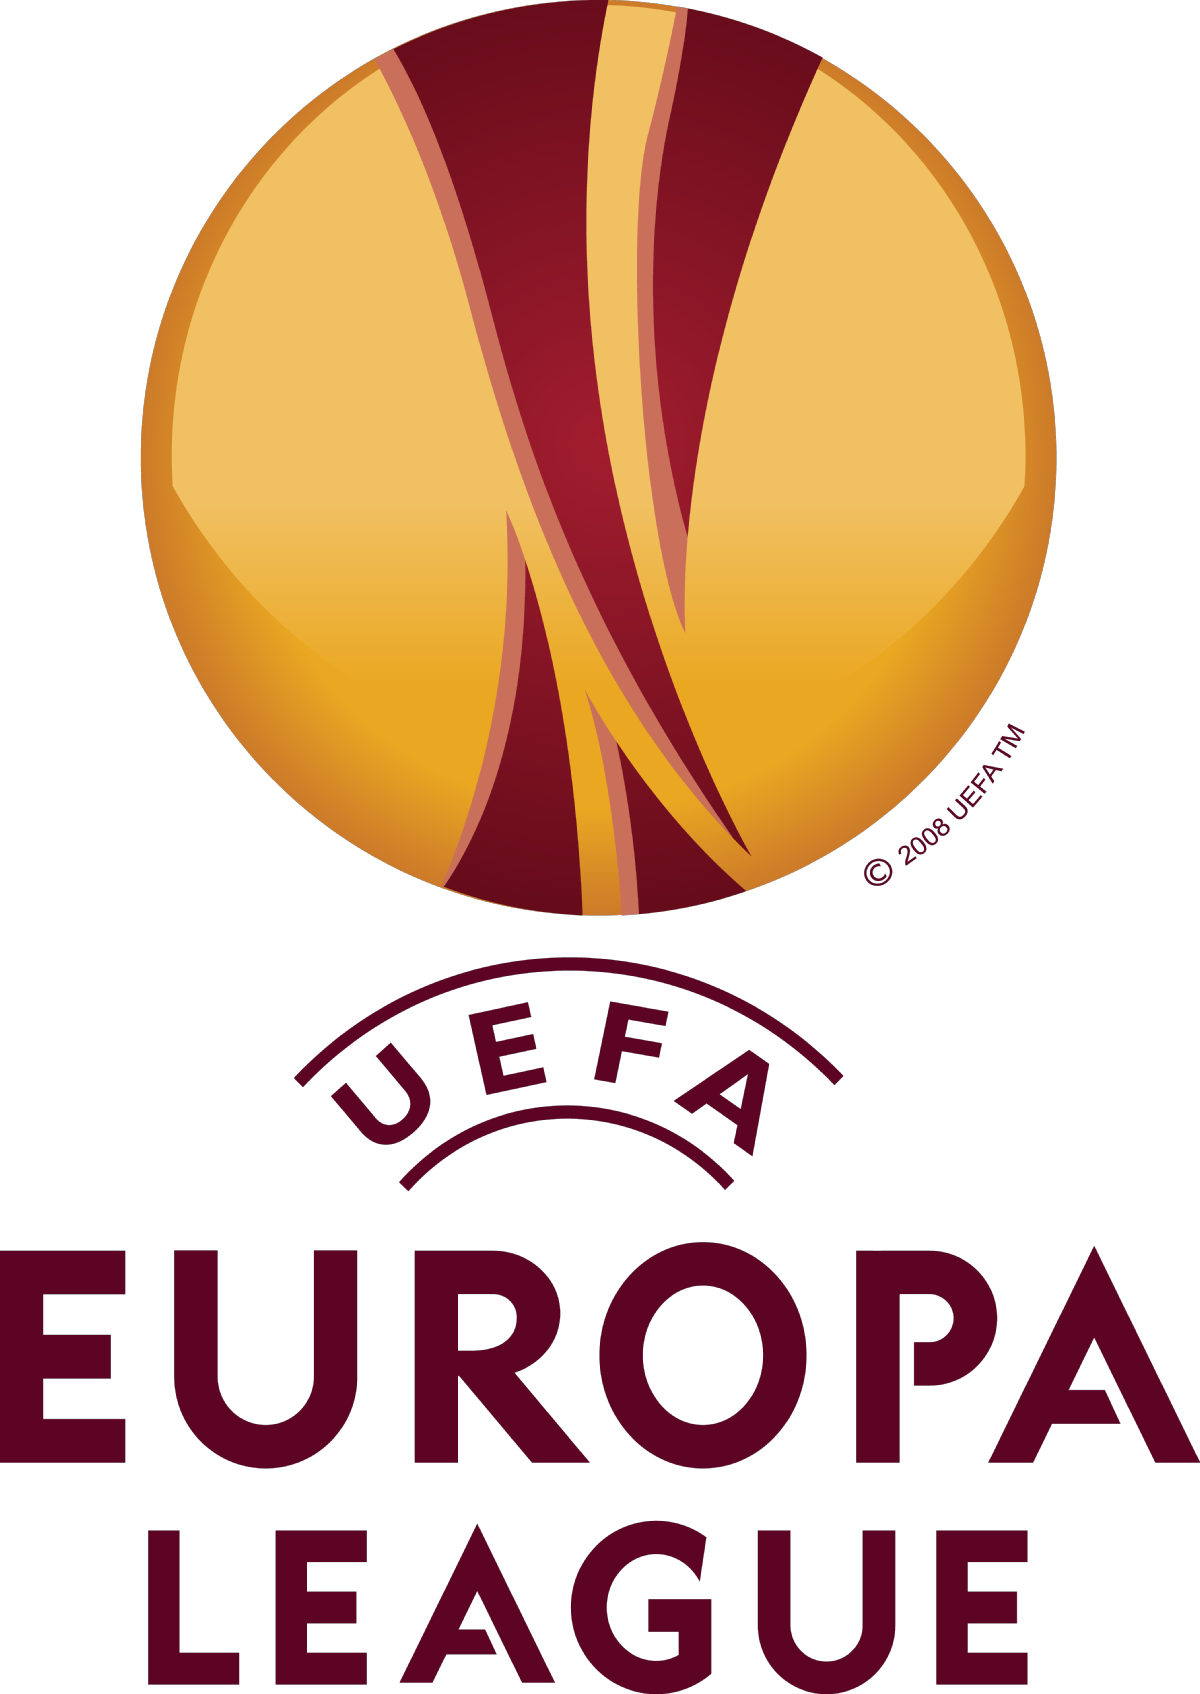 File:UEFA Europa League logo.png - Wikipedia